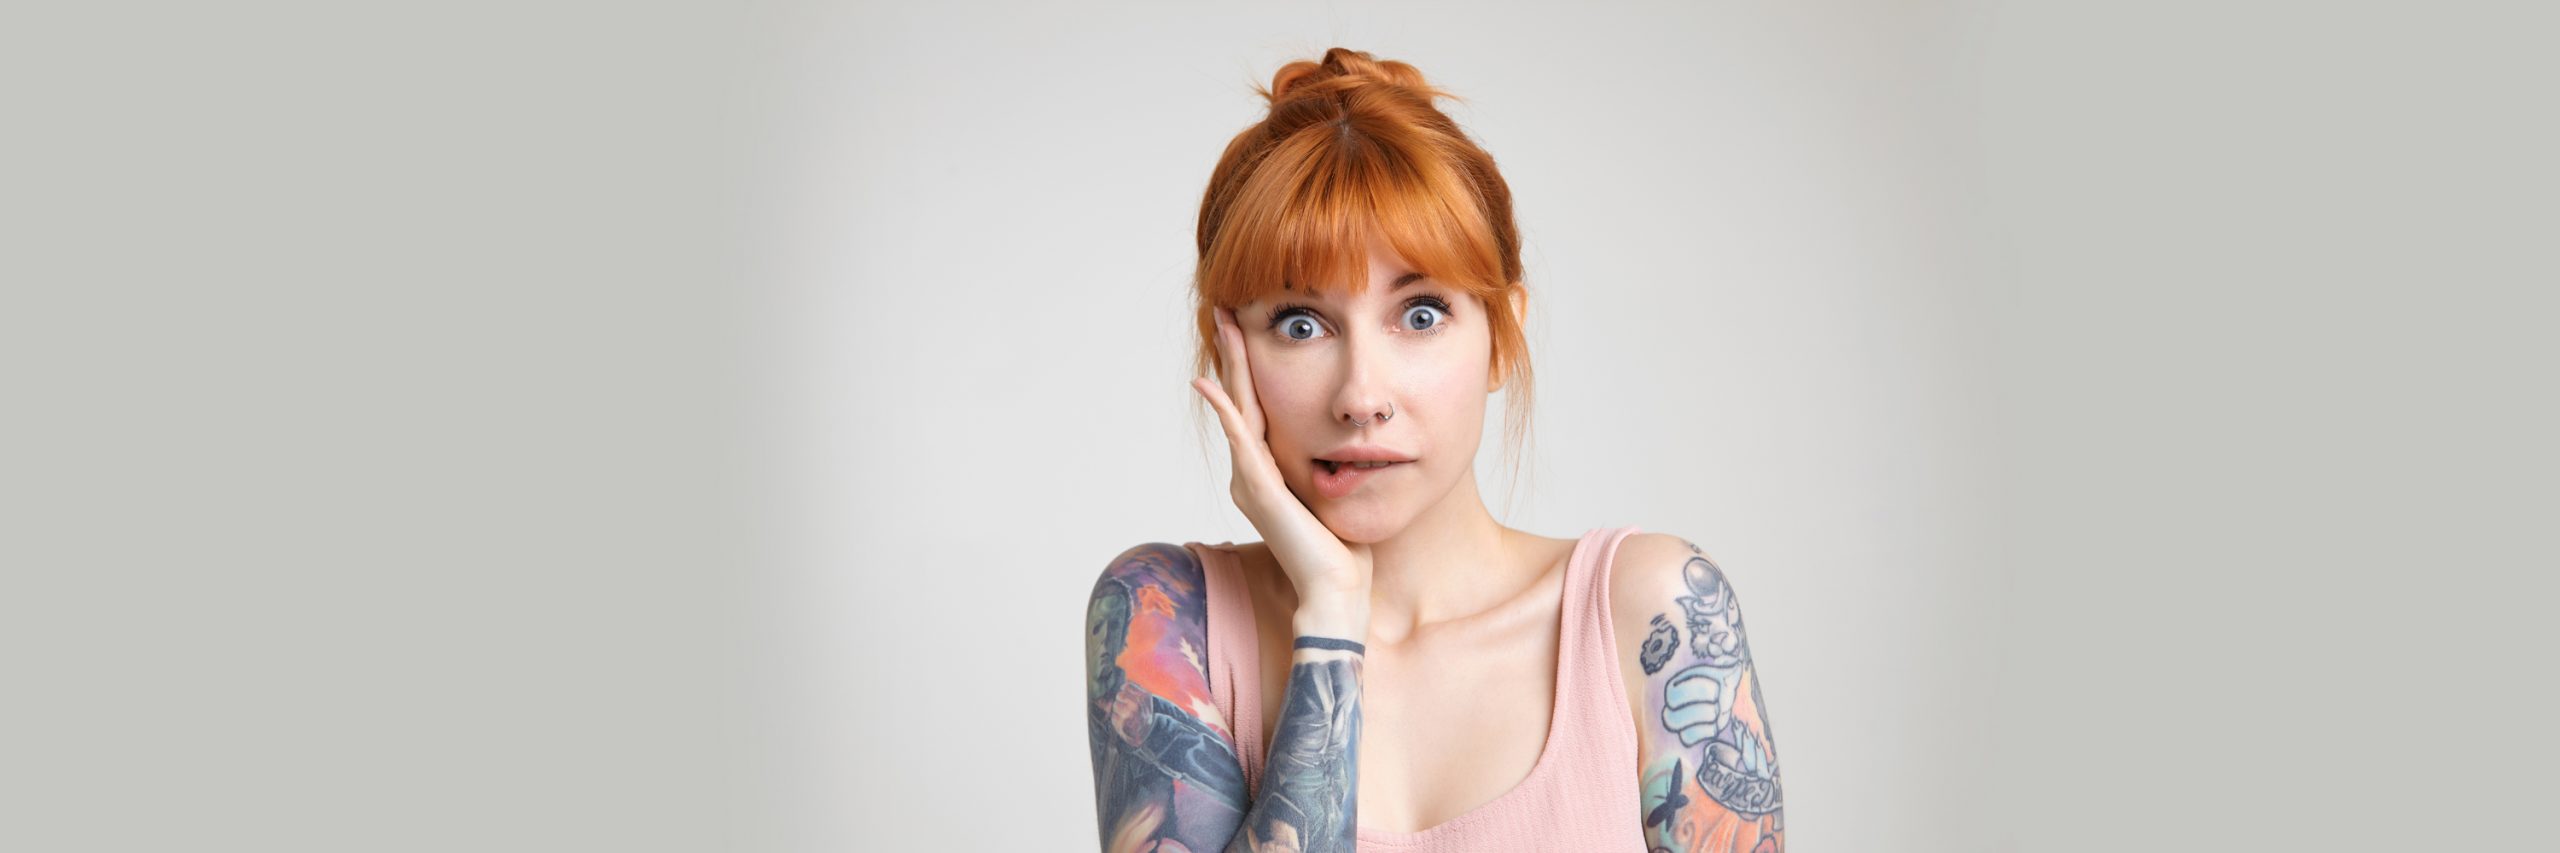 mulher ruiva tatuada com cara de preocupada